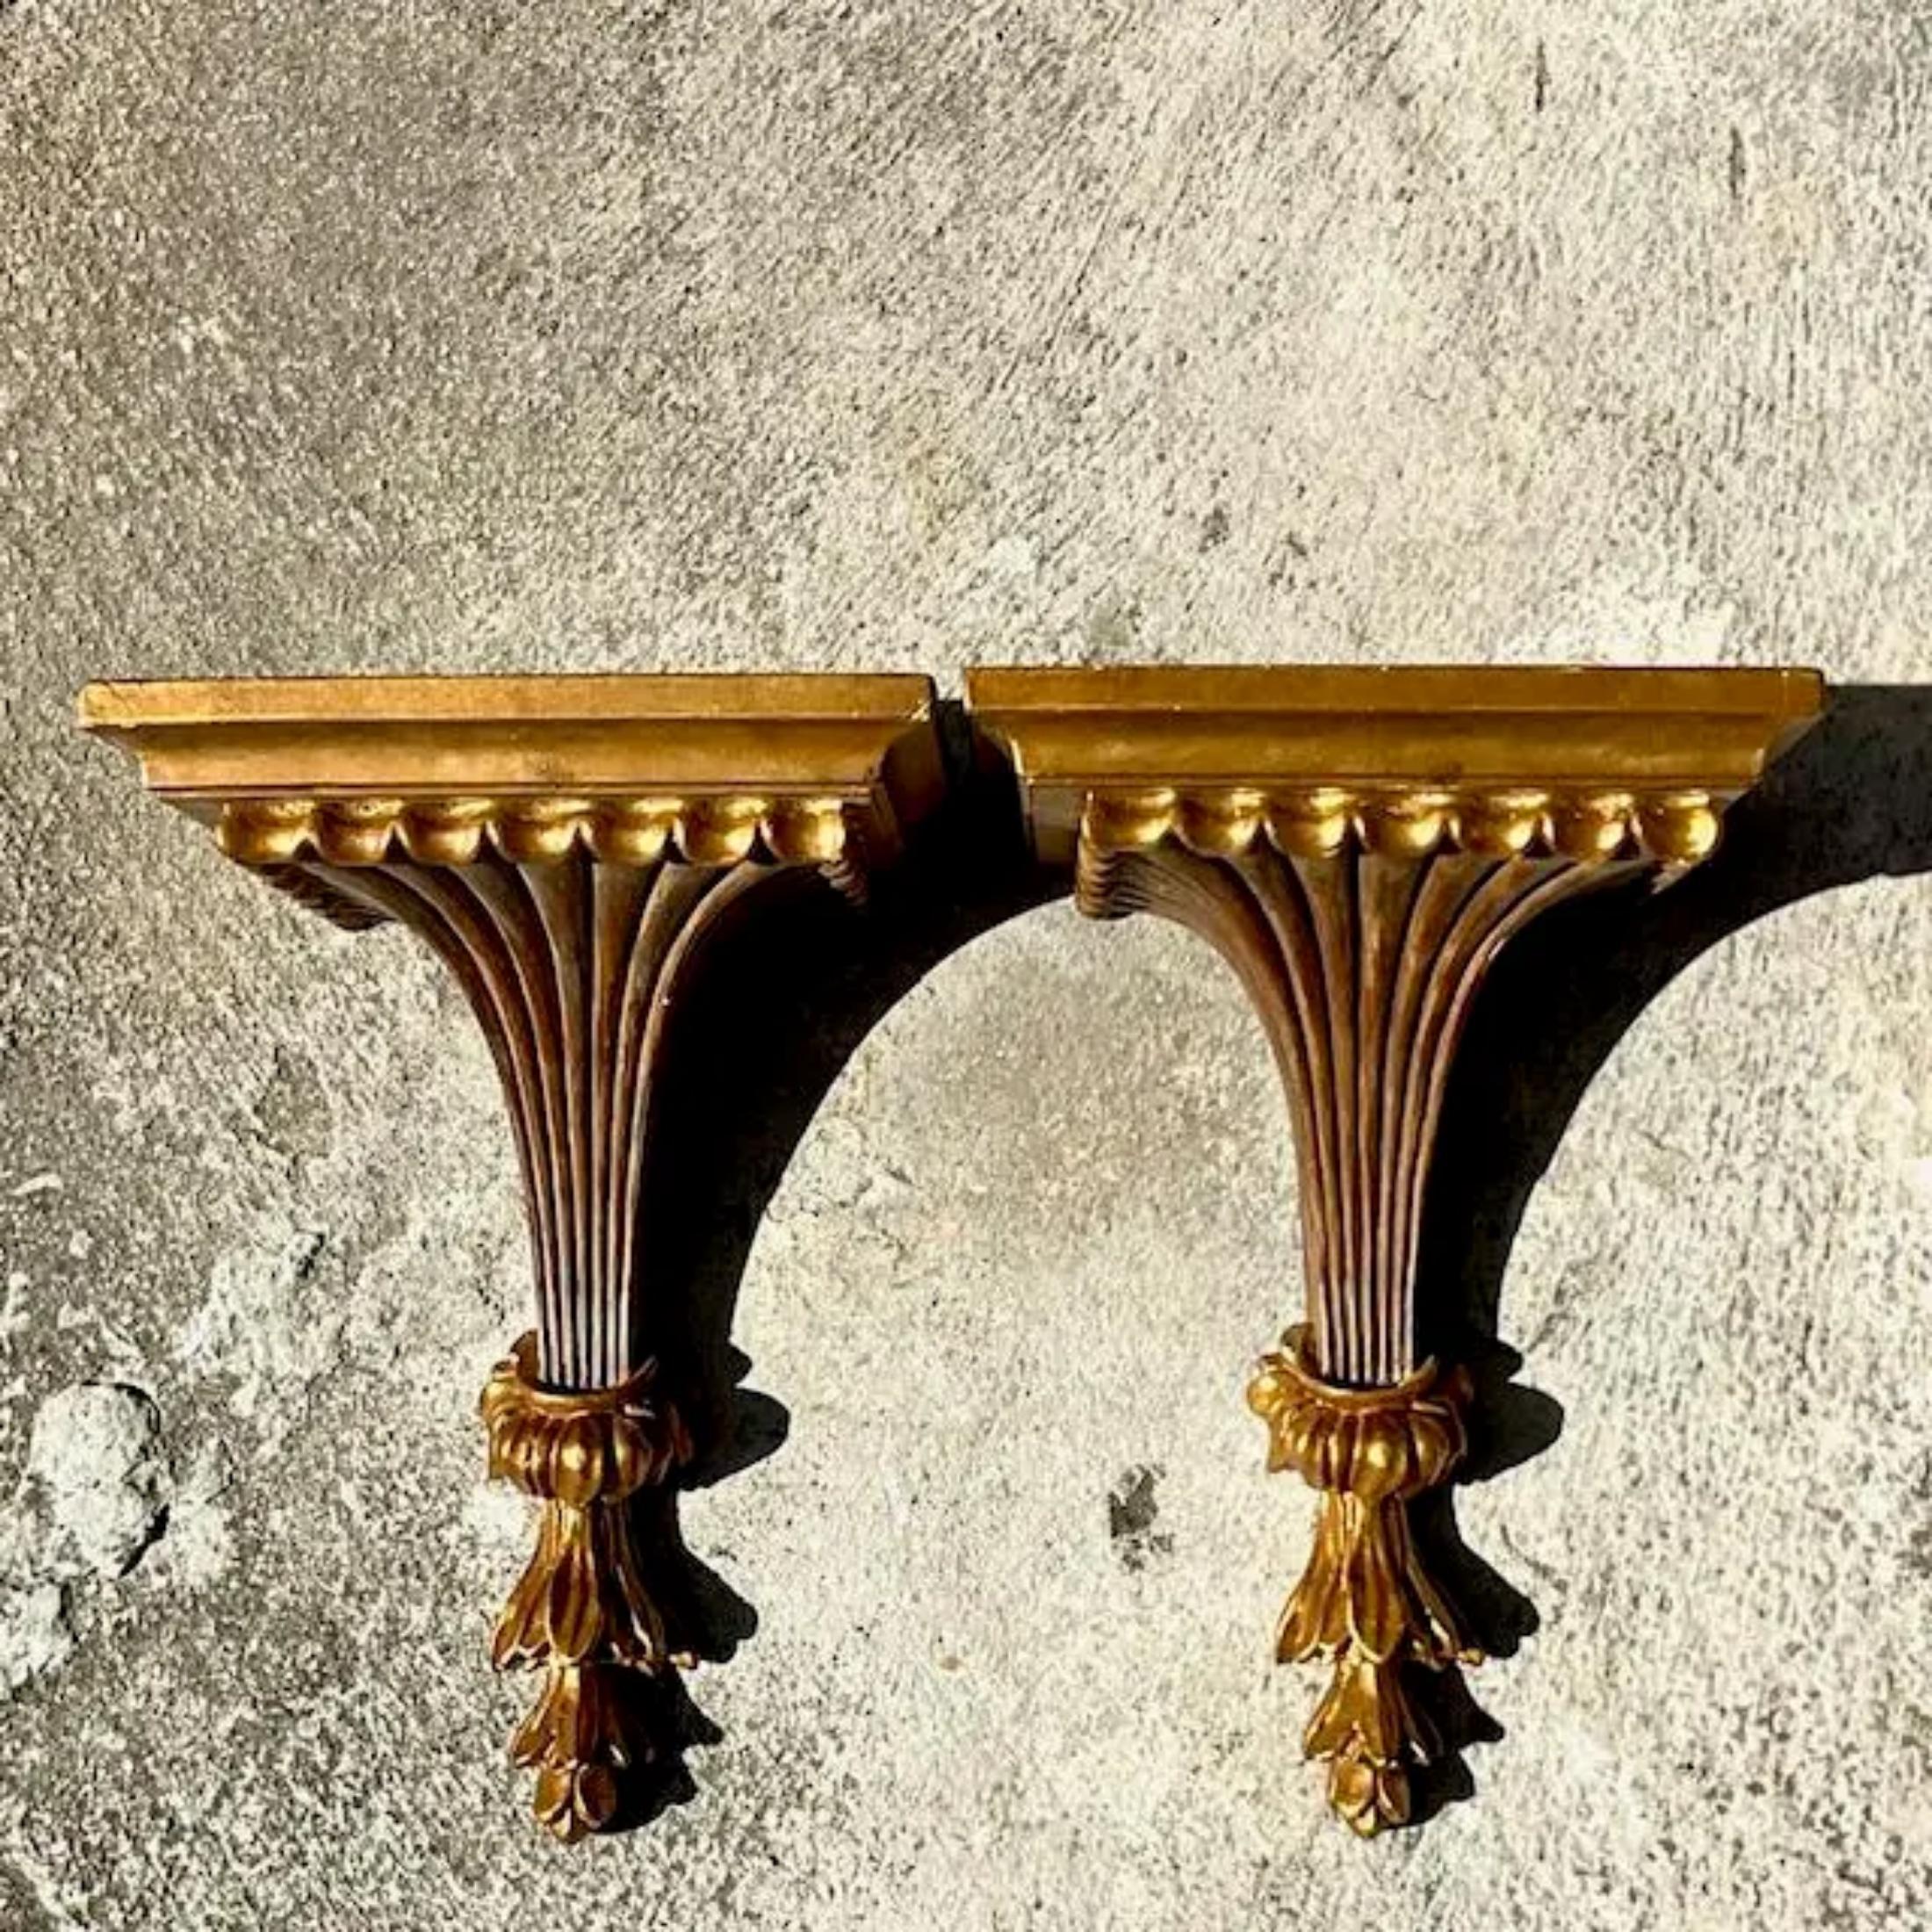 Une fabuleuse paire de supports muraux Regency vintage. Finition dorée chic sur un design classique. Acquis d'une propriété de Palm Beach.